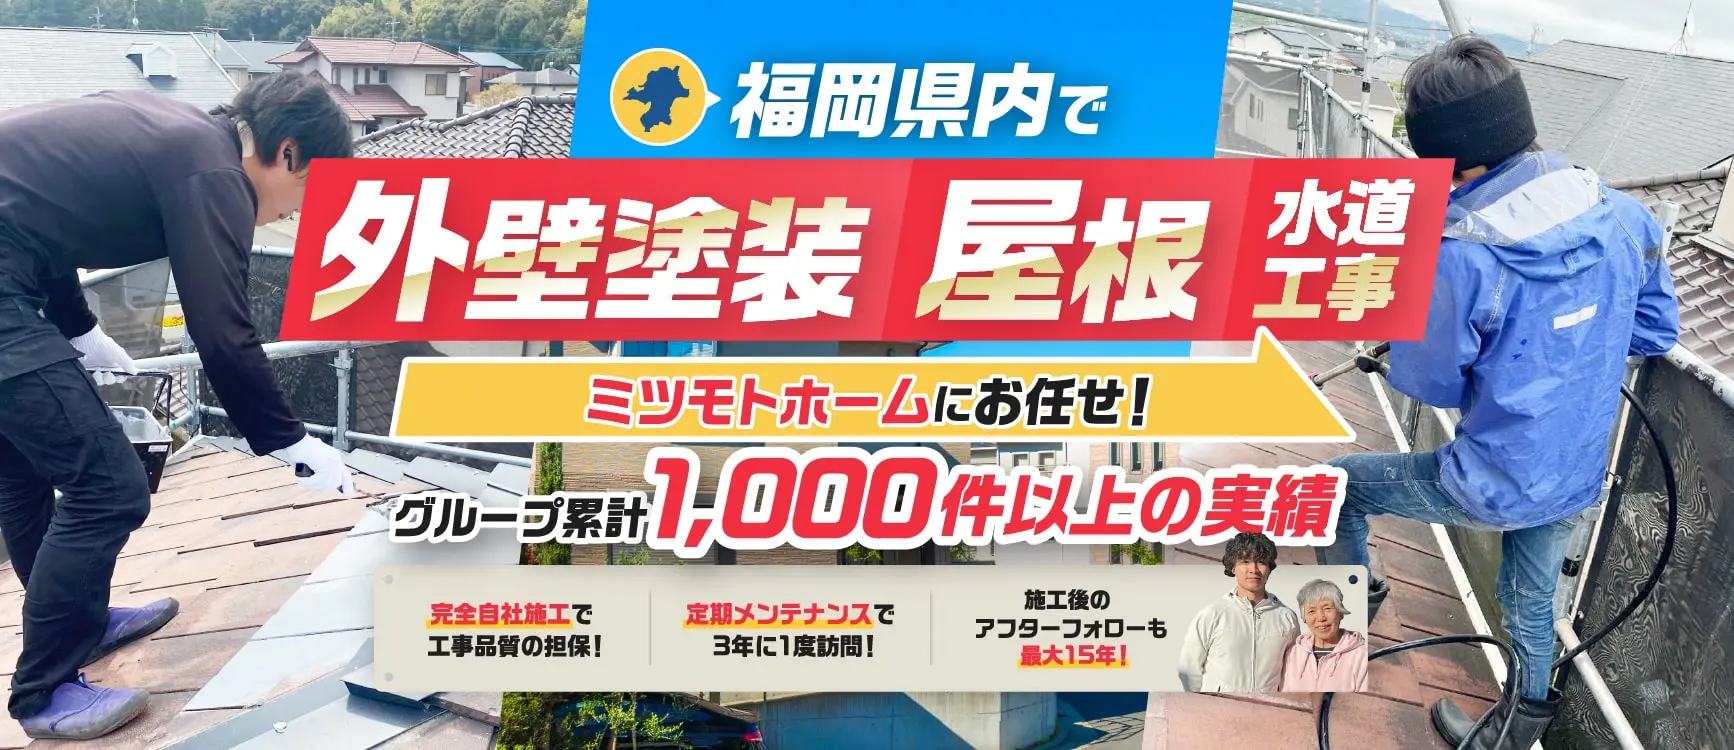 福岡県内で外壁塗装・屋根・水道工事 ミツモトホームにお任せ！グループ累計1,000件以上の実績